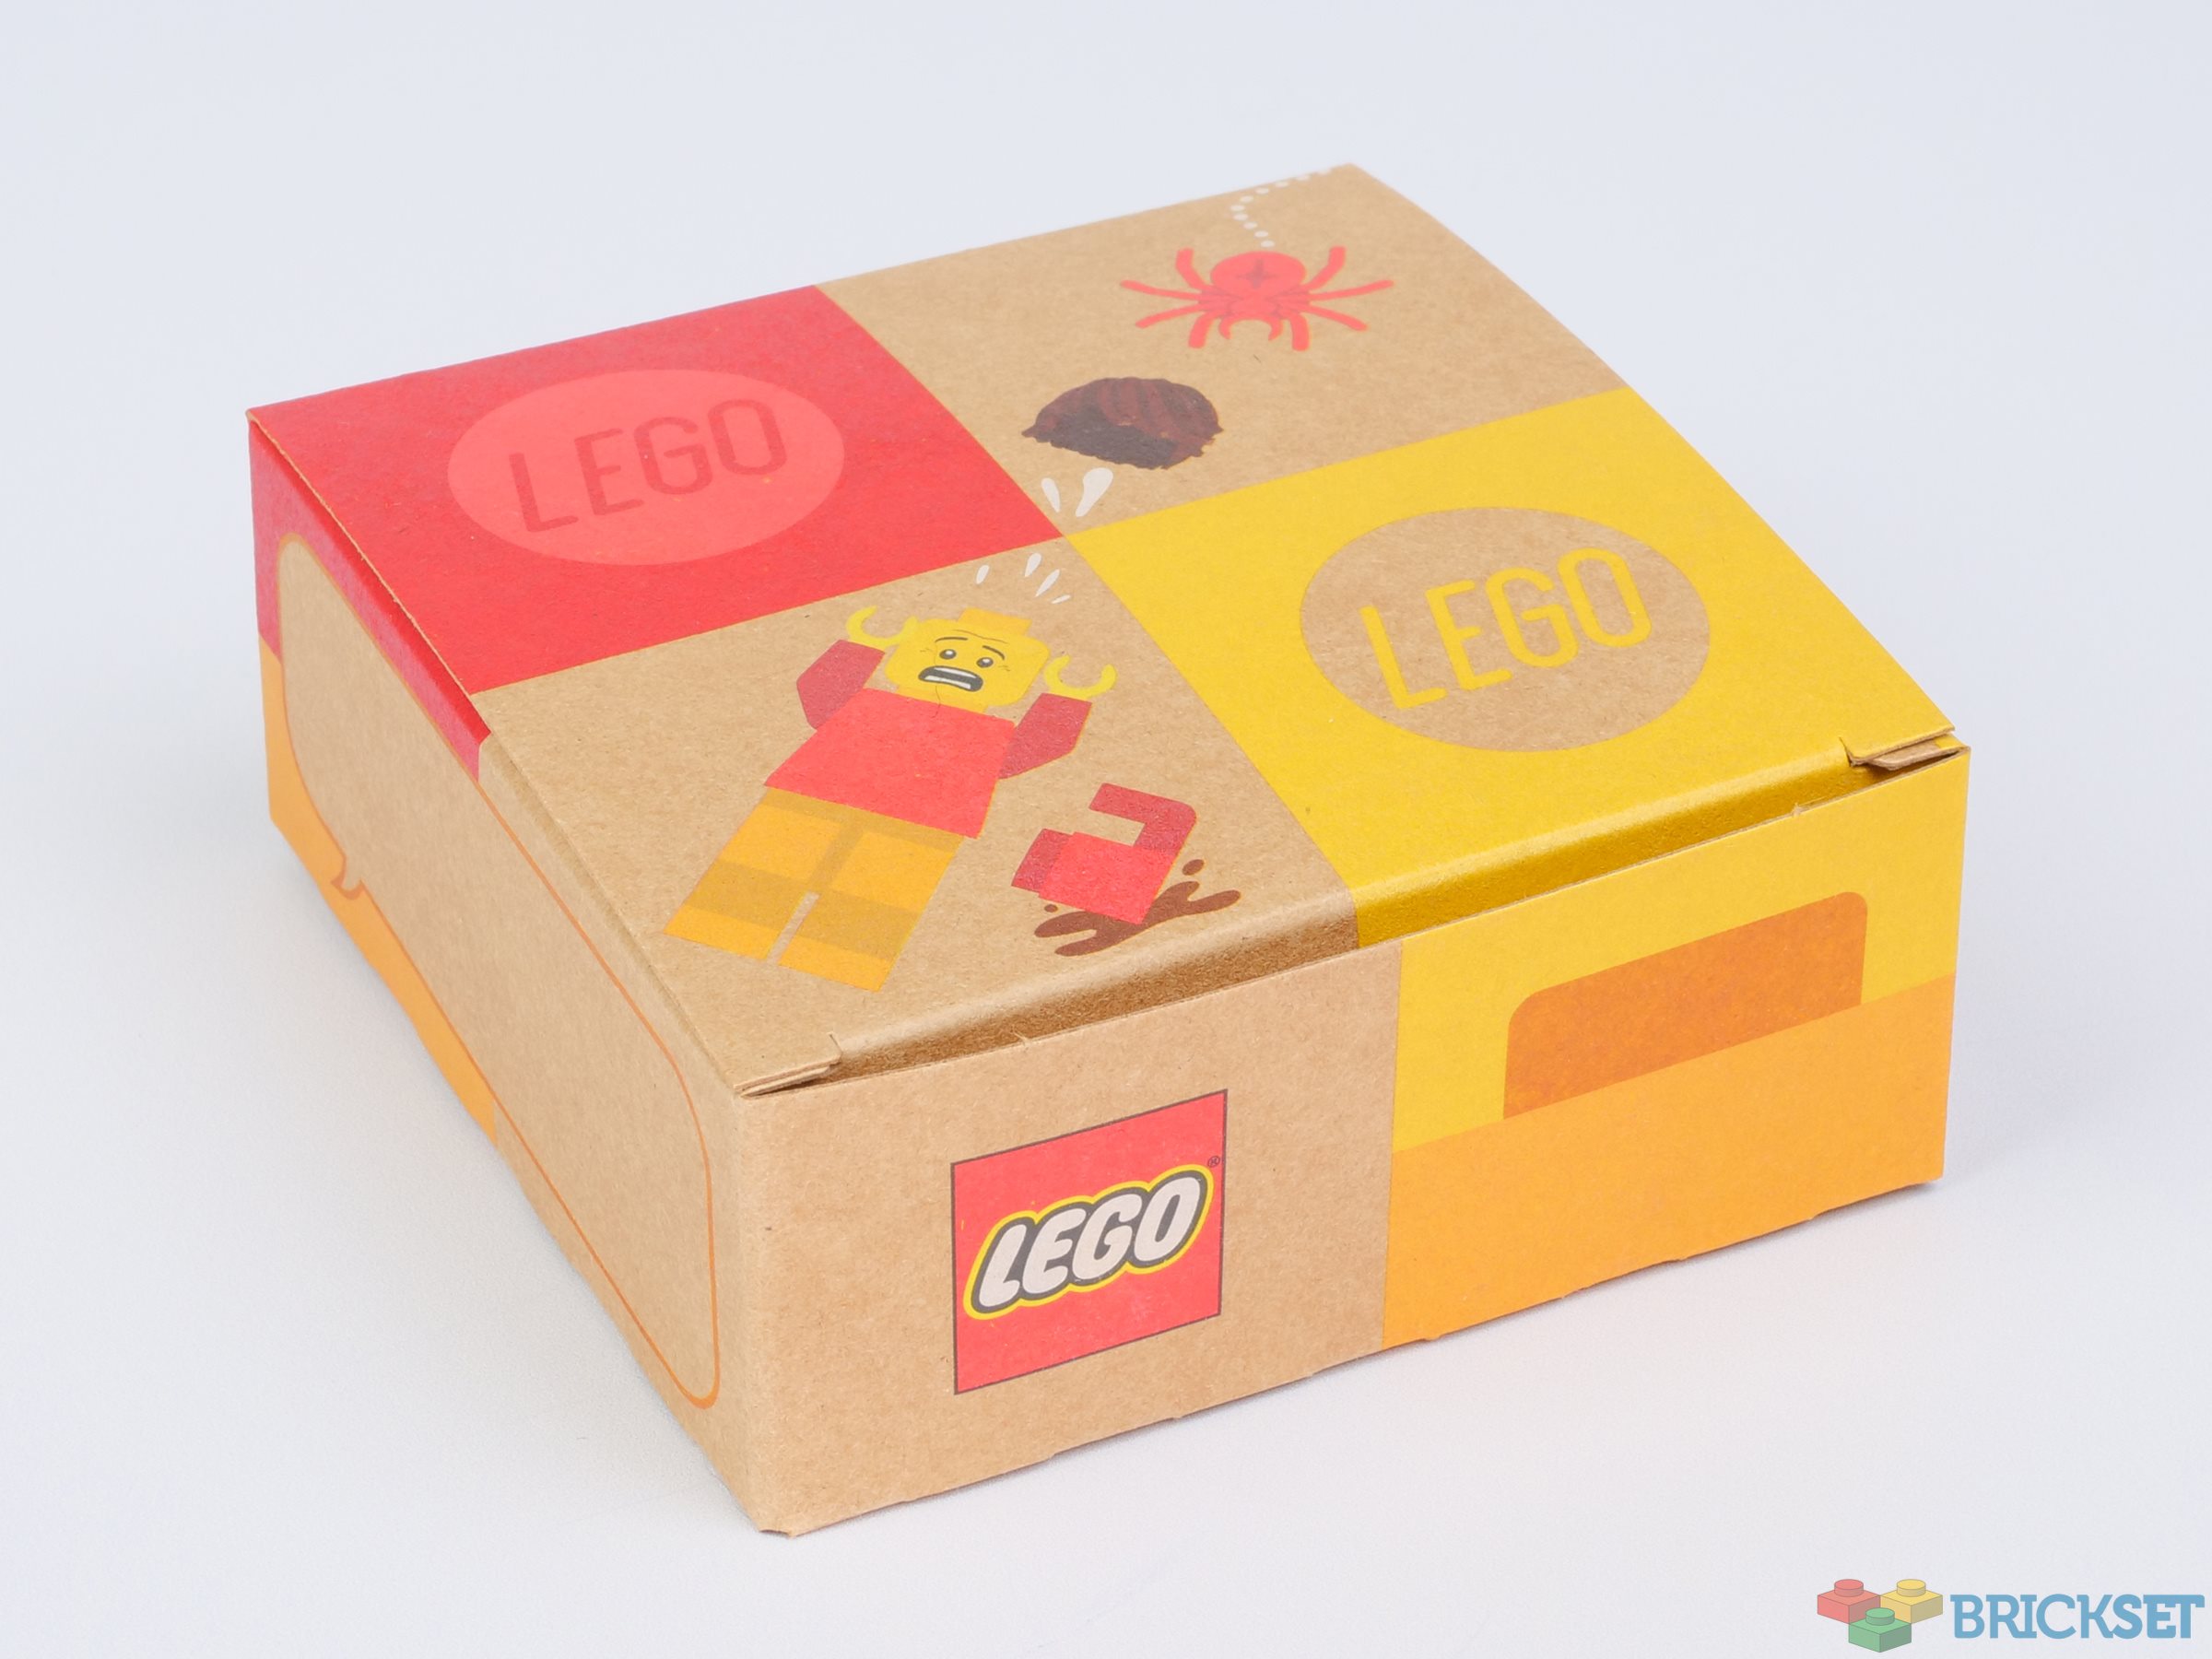 A look at the Pick a Brick cardboard boxes | Brickset